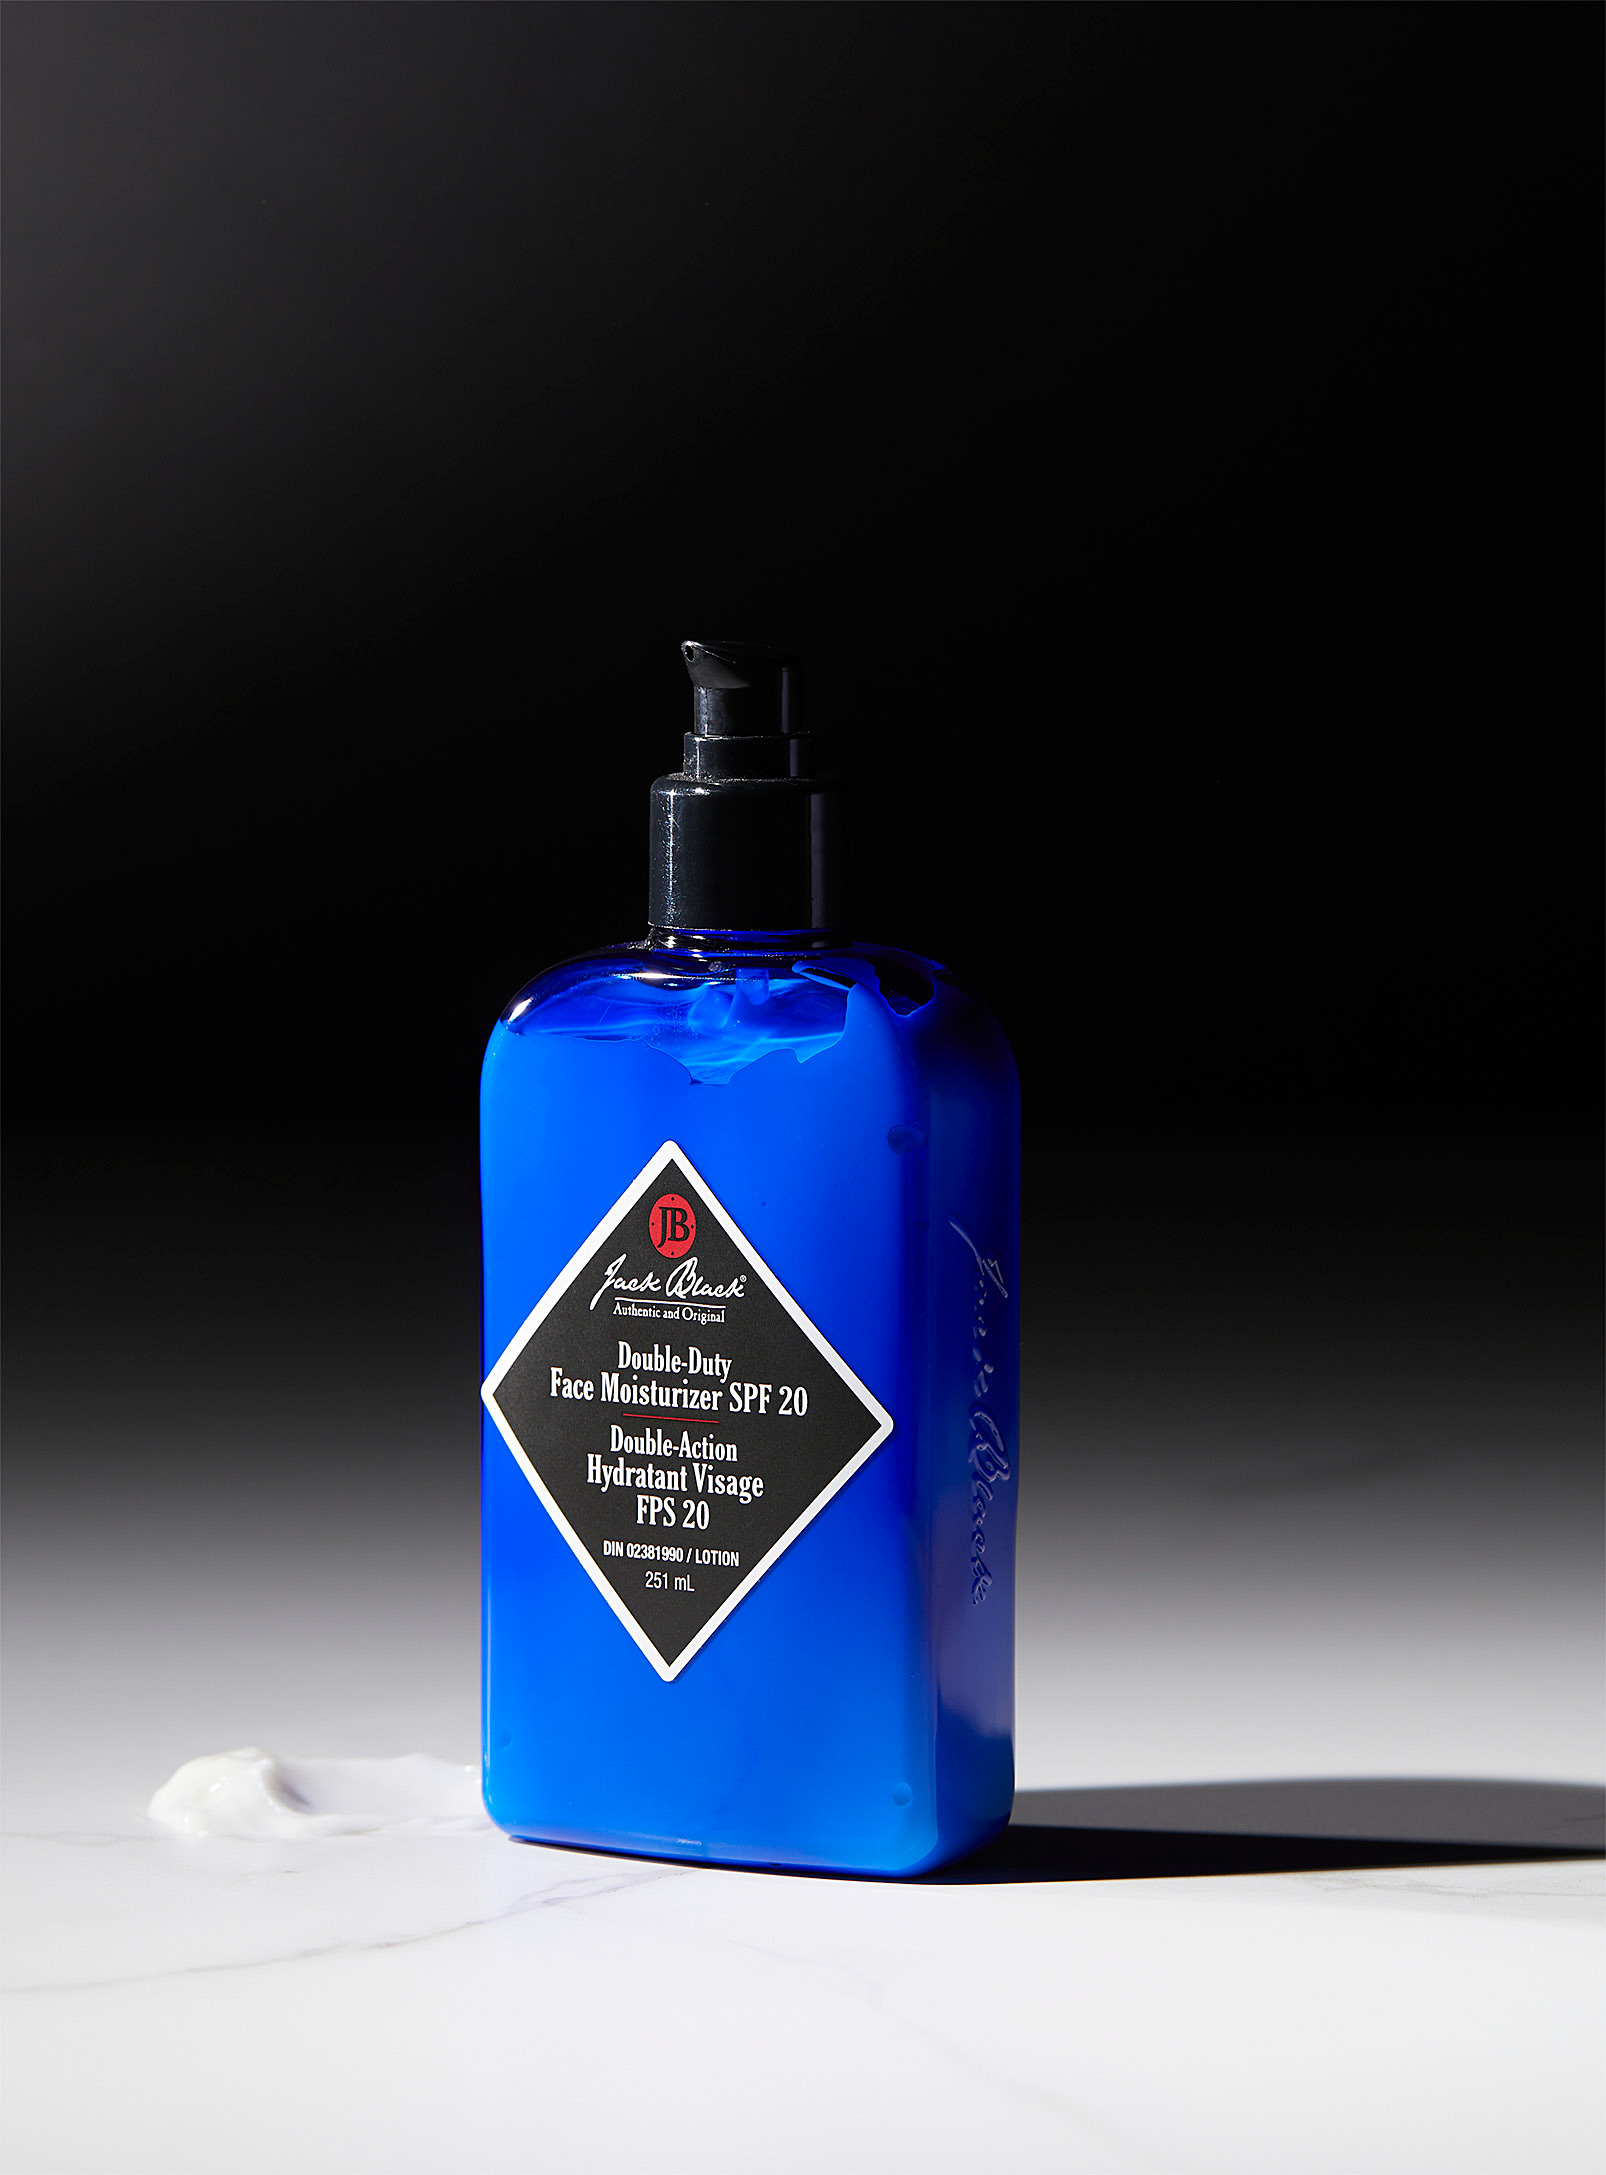 Jack Black - Double-Duty face moisturizer SPF 20